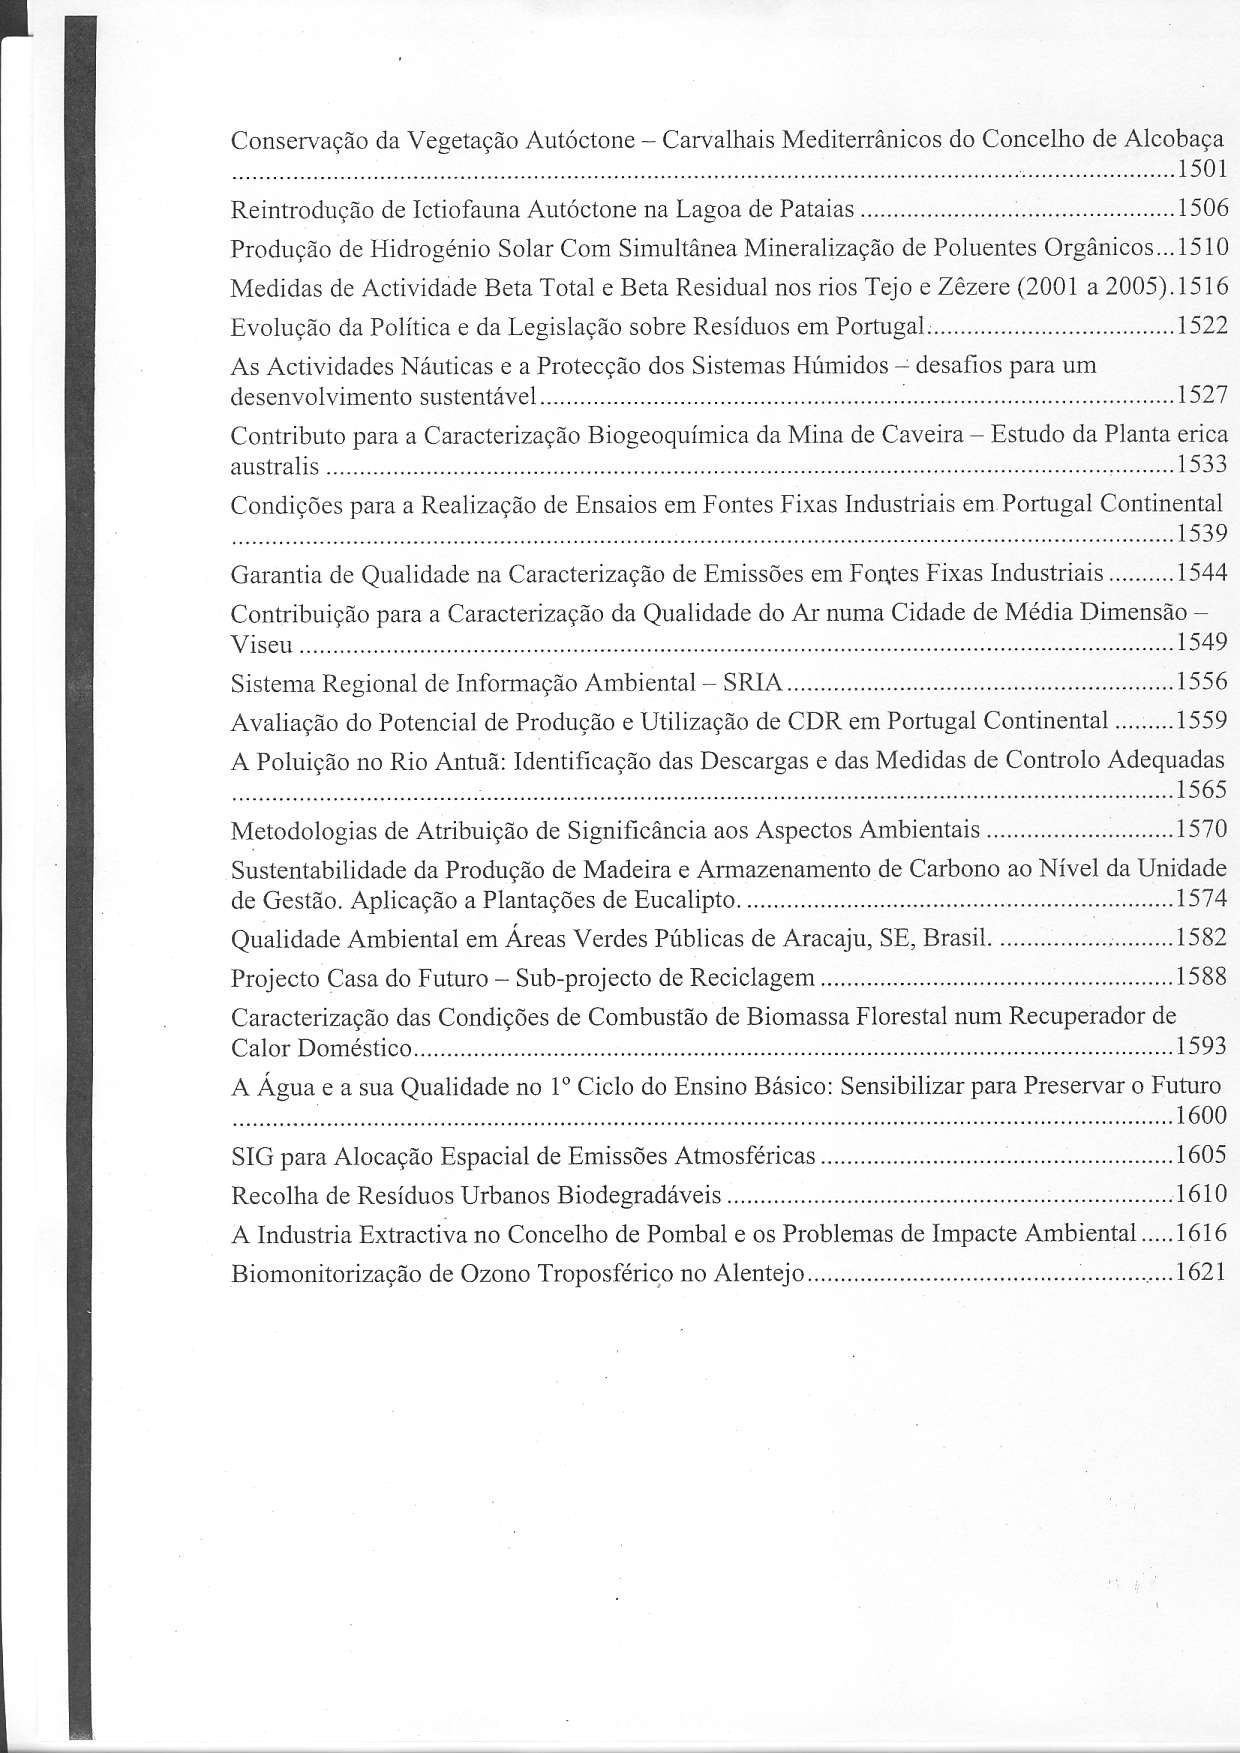 Conservação da Vegetação Autóçtone - Carvalhais Mediterrânicos do Concelho de Alcobaça 1501 Reintrodução de Ictiofauüa Autóctone na Lagoa de Pataias.